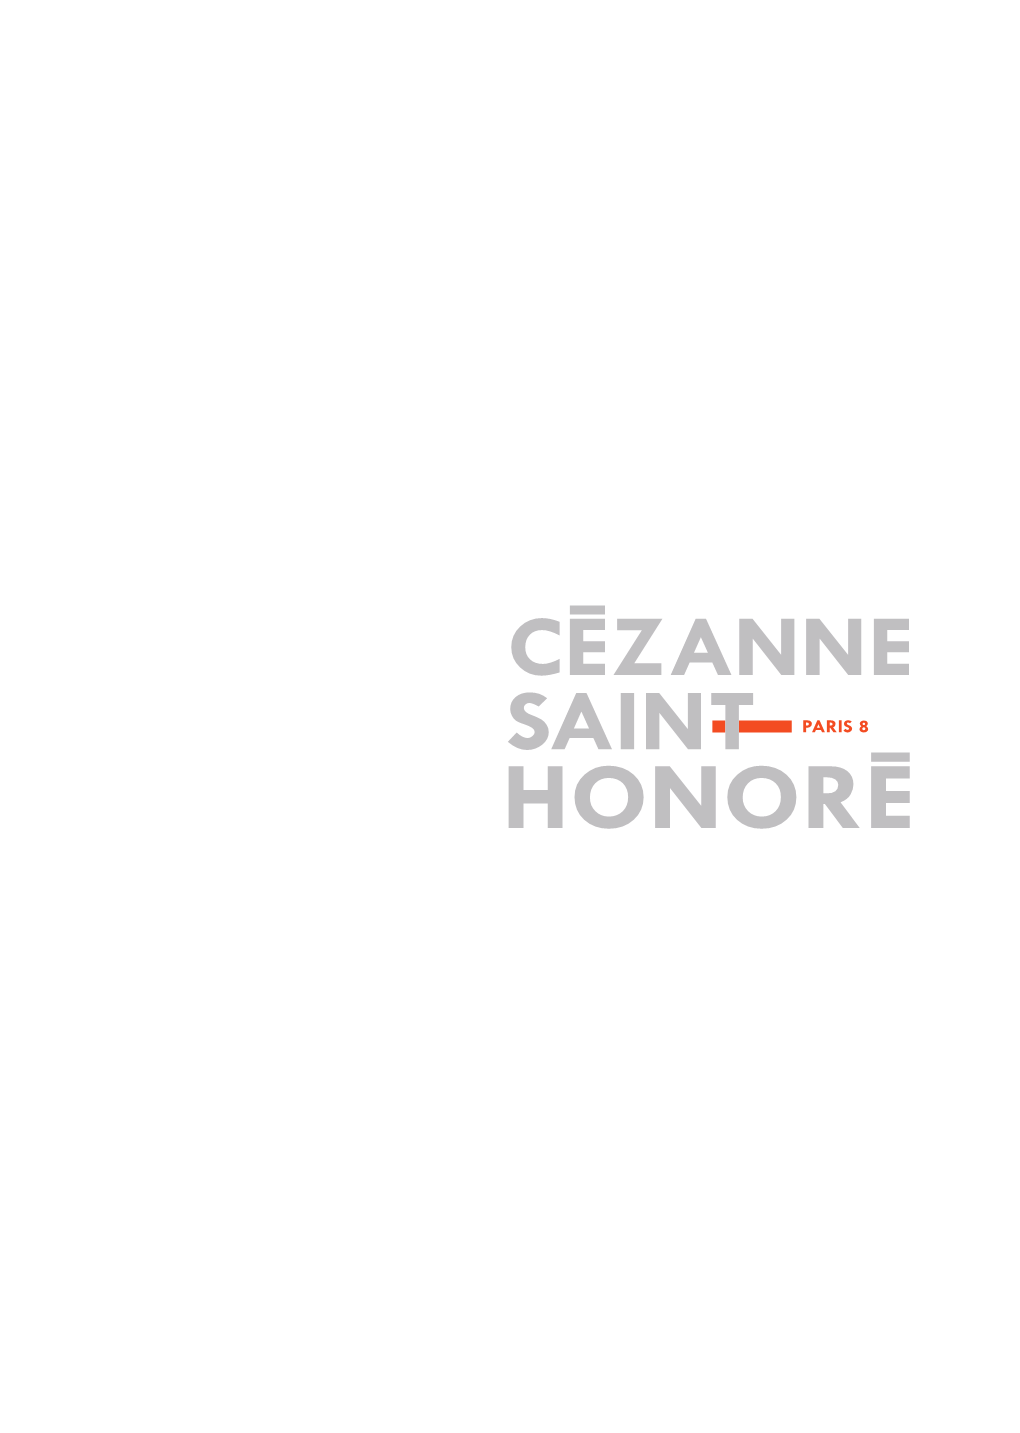 Plaquette Cézanne Saint Honoré